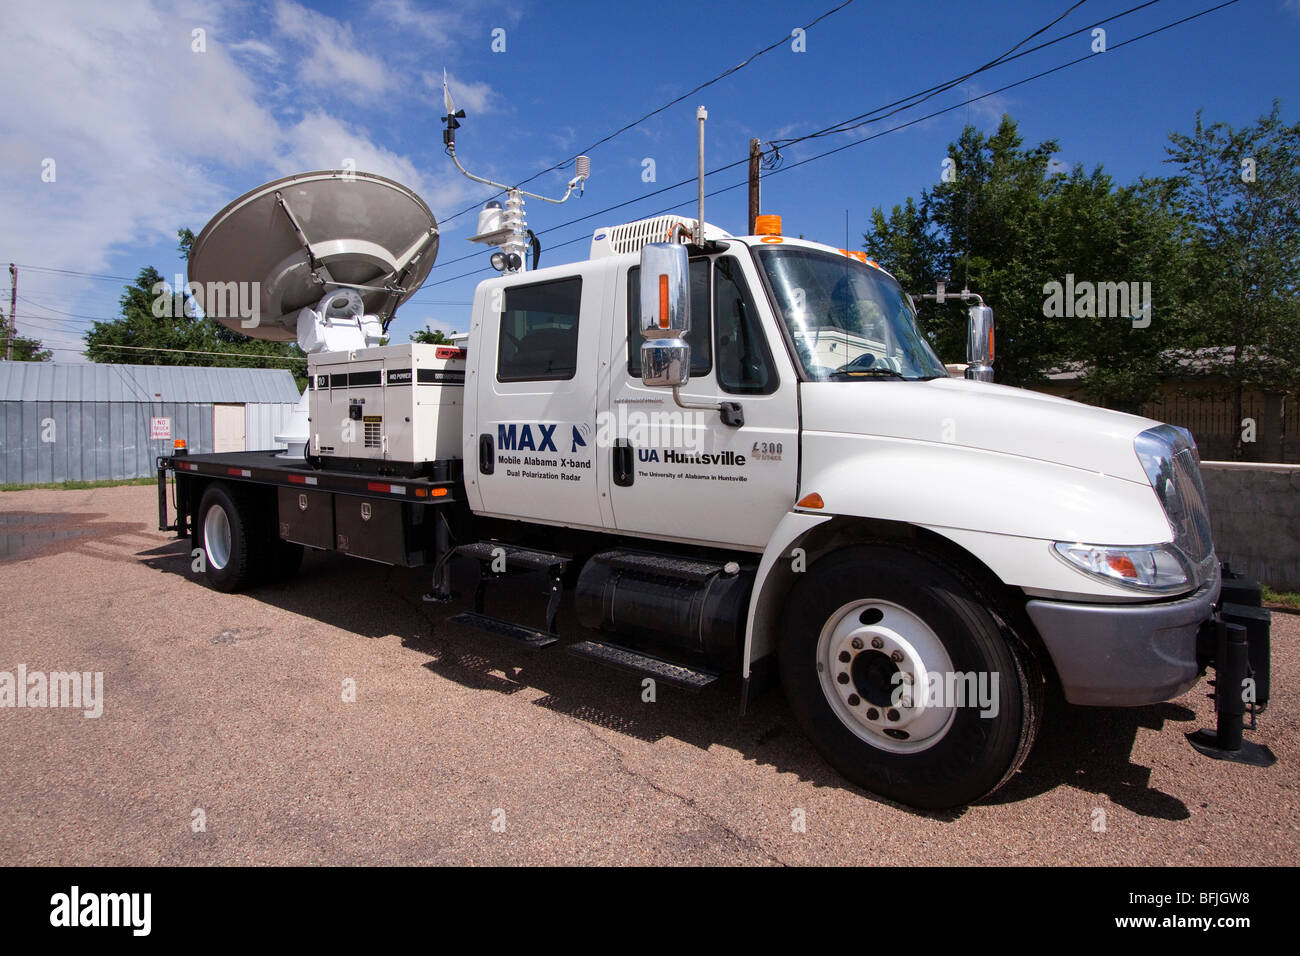 Un radar doppler mobile chariot de l'Université de l'Alabama. Banque D'Images